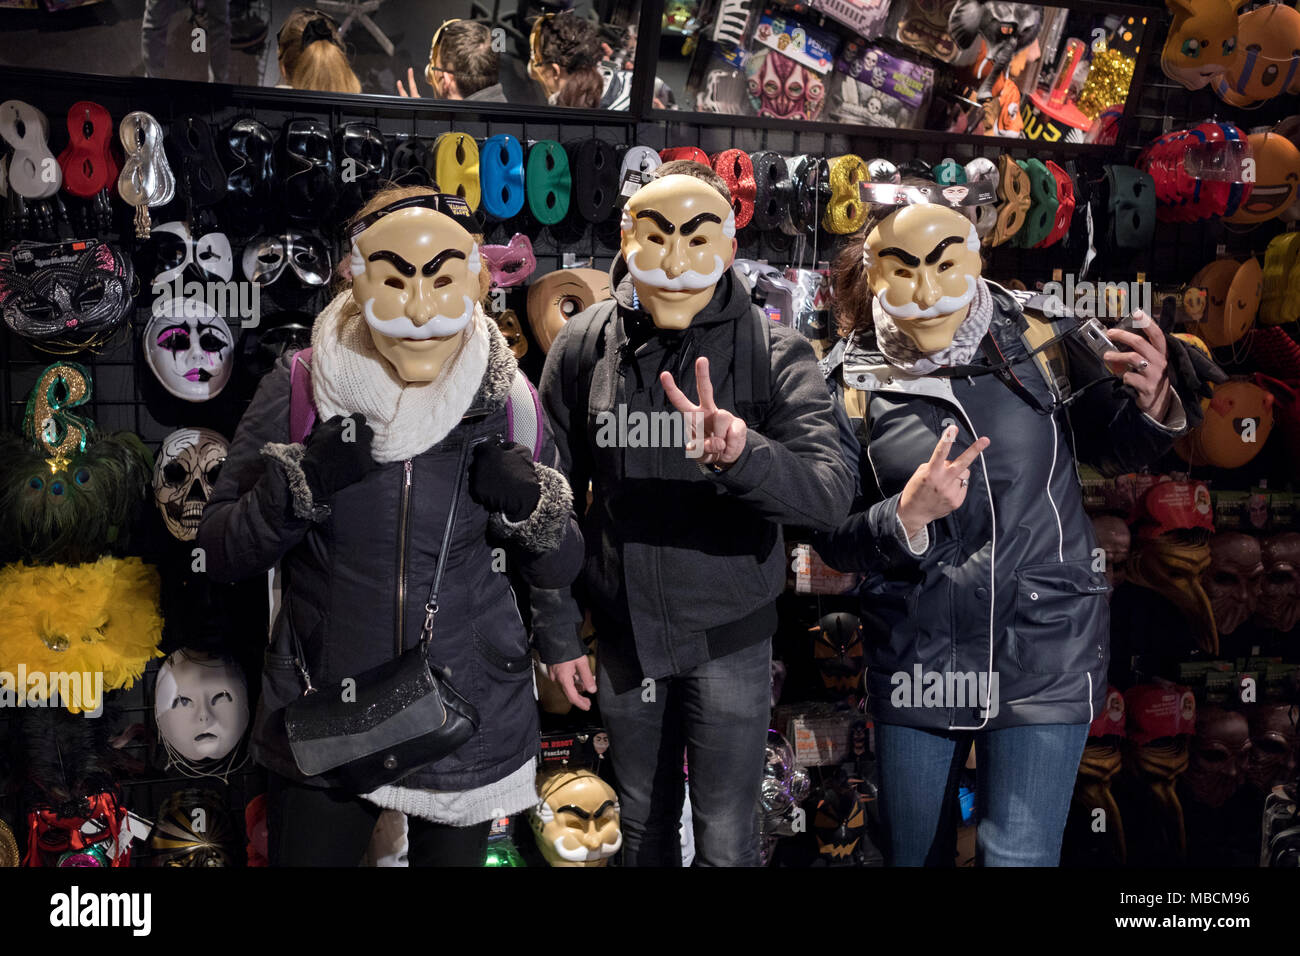 3 touristes français posent pour une photo dans le masque de l'aventure magasin costume Halloween sur Broadway dans Greenwich Village. Banque D'Images